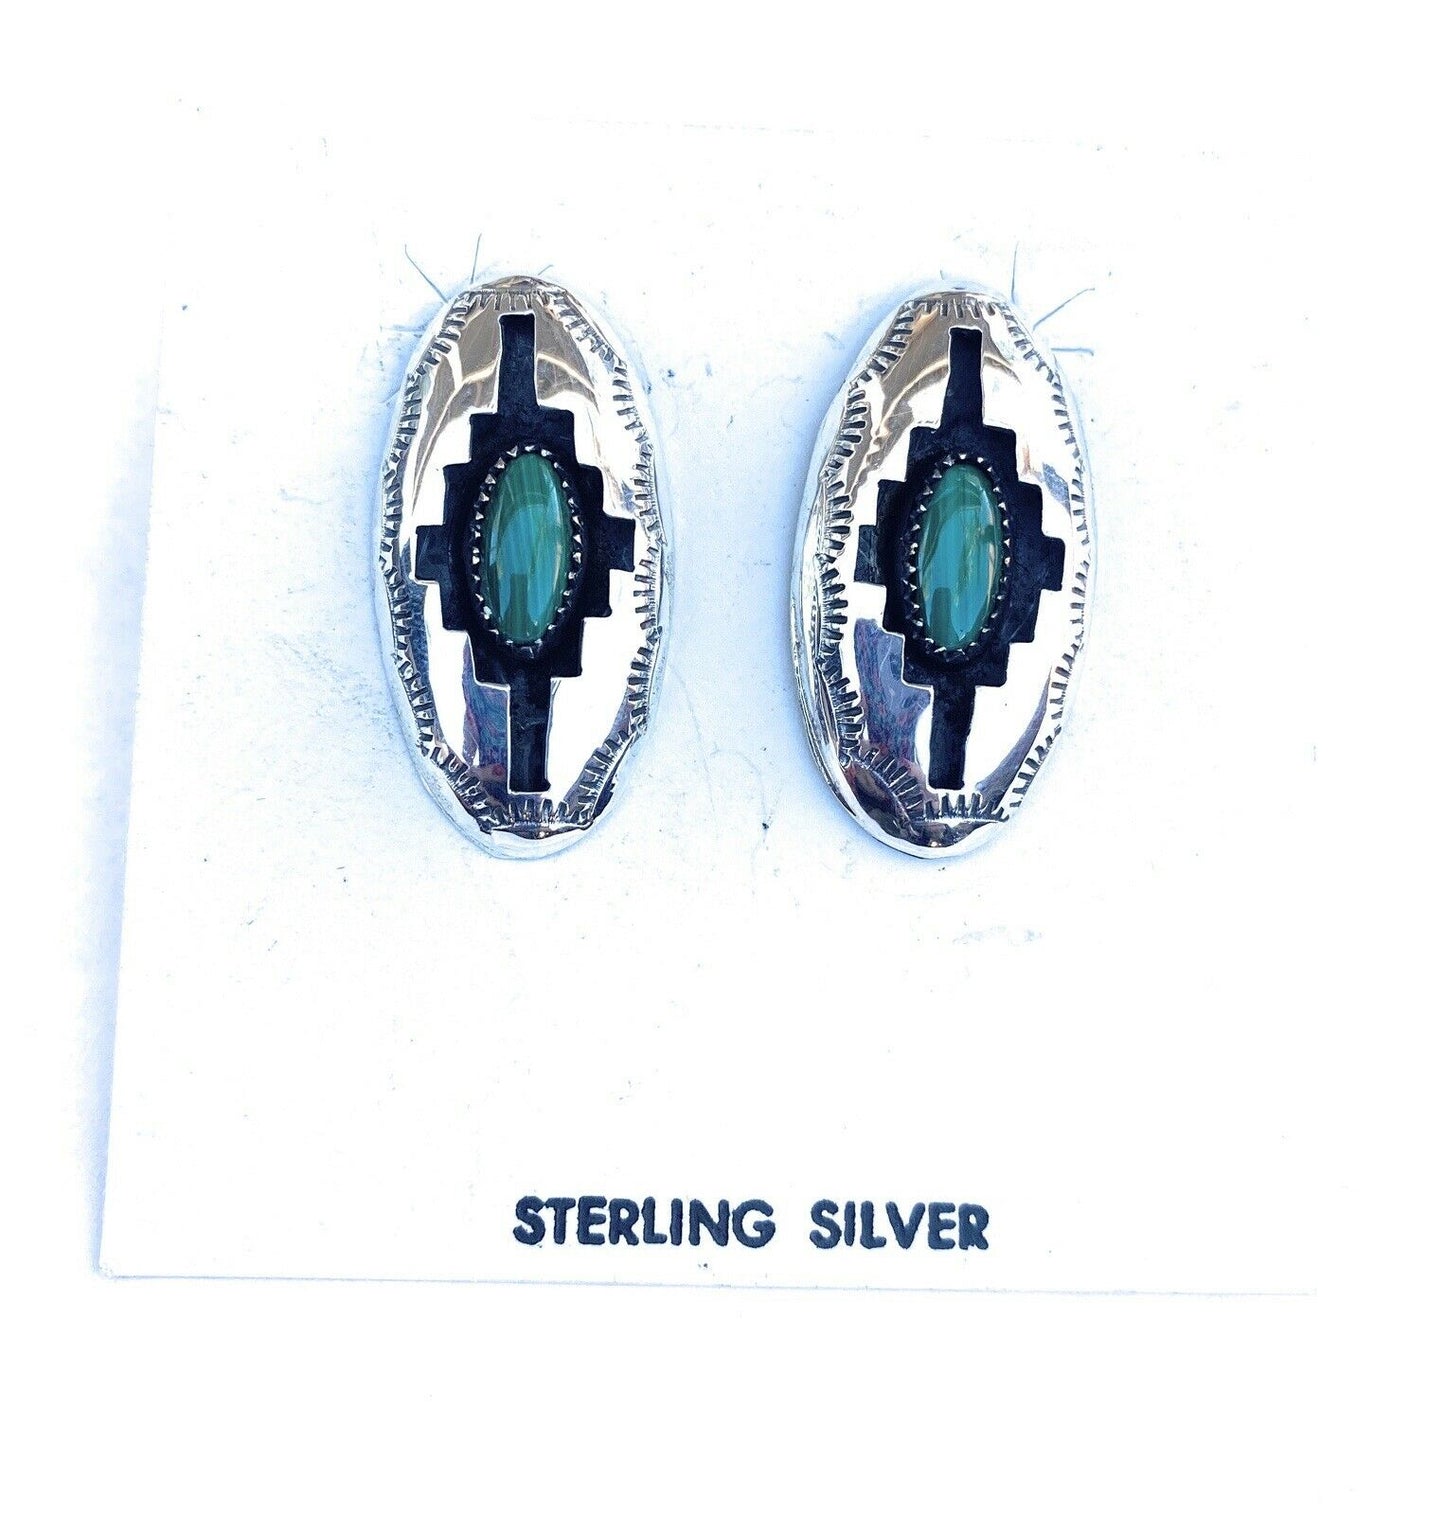 Navajo Malachite & Sterling Silver Shadow Box Post Earrings